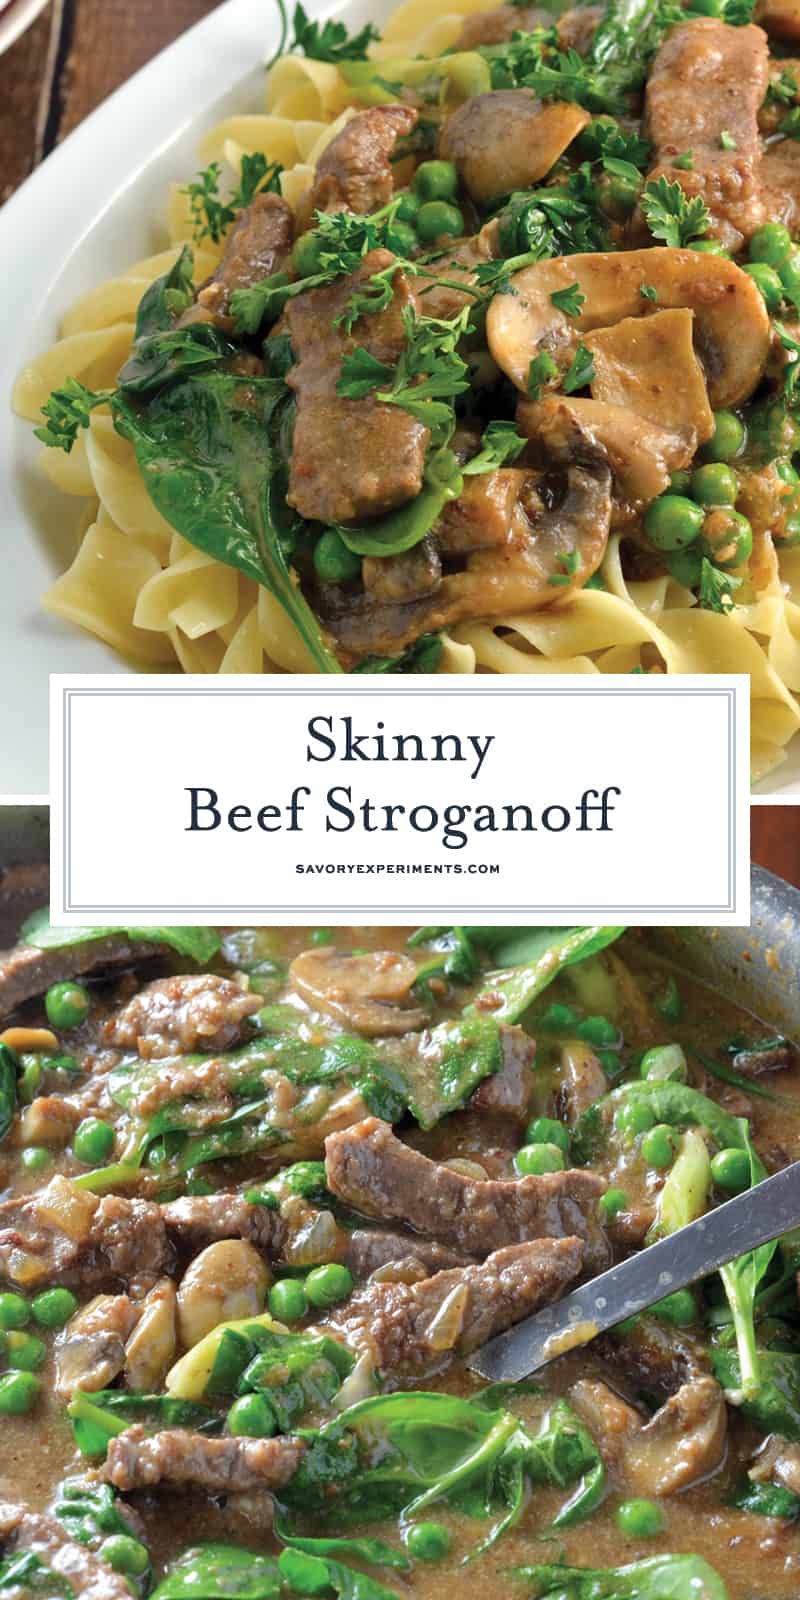  Skinny Beef Stroganoff Verwenden Sie eine geheime Zutat, um daraus ein kalorienarmes cremiges Gericht zu machen. Fügen Sie Erbsen und Spinat für zusätzliches Gemüse hinzu! #beefstroganoff www.savoryexperiments.com 